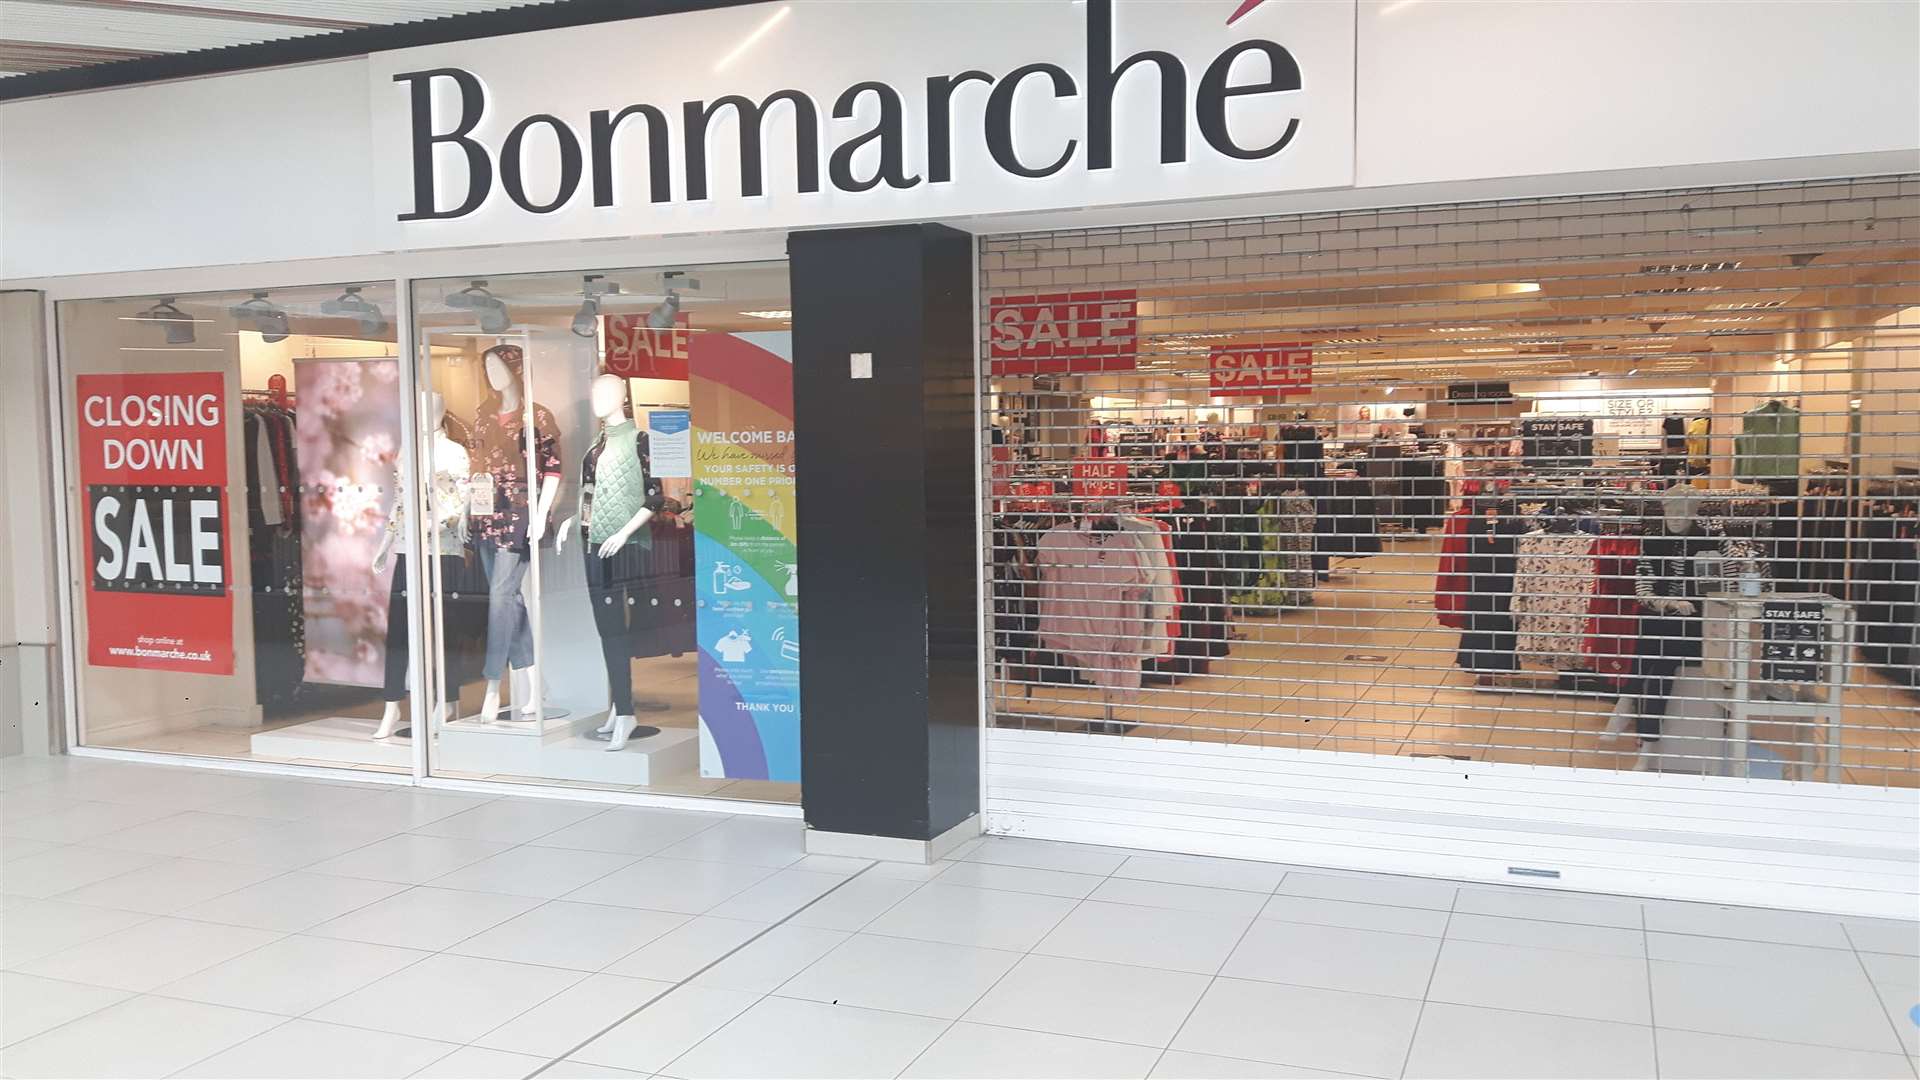 The Bonmarche store in The Mall, Maidstone